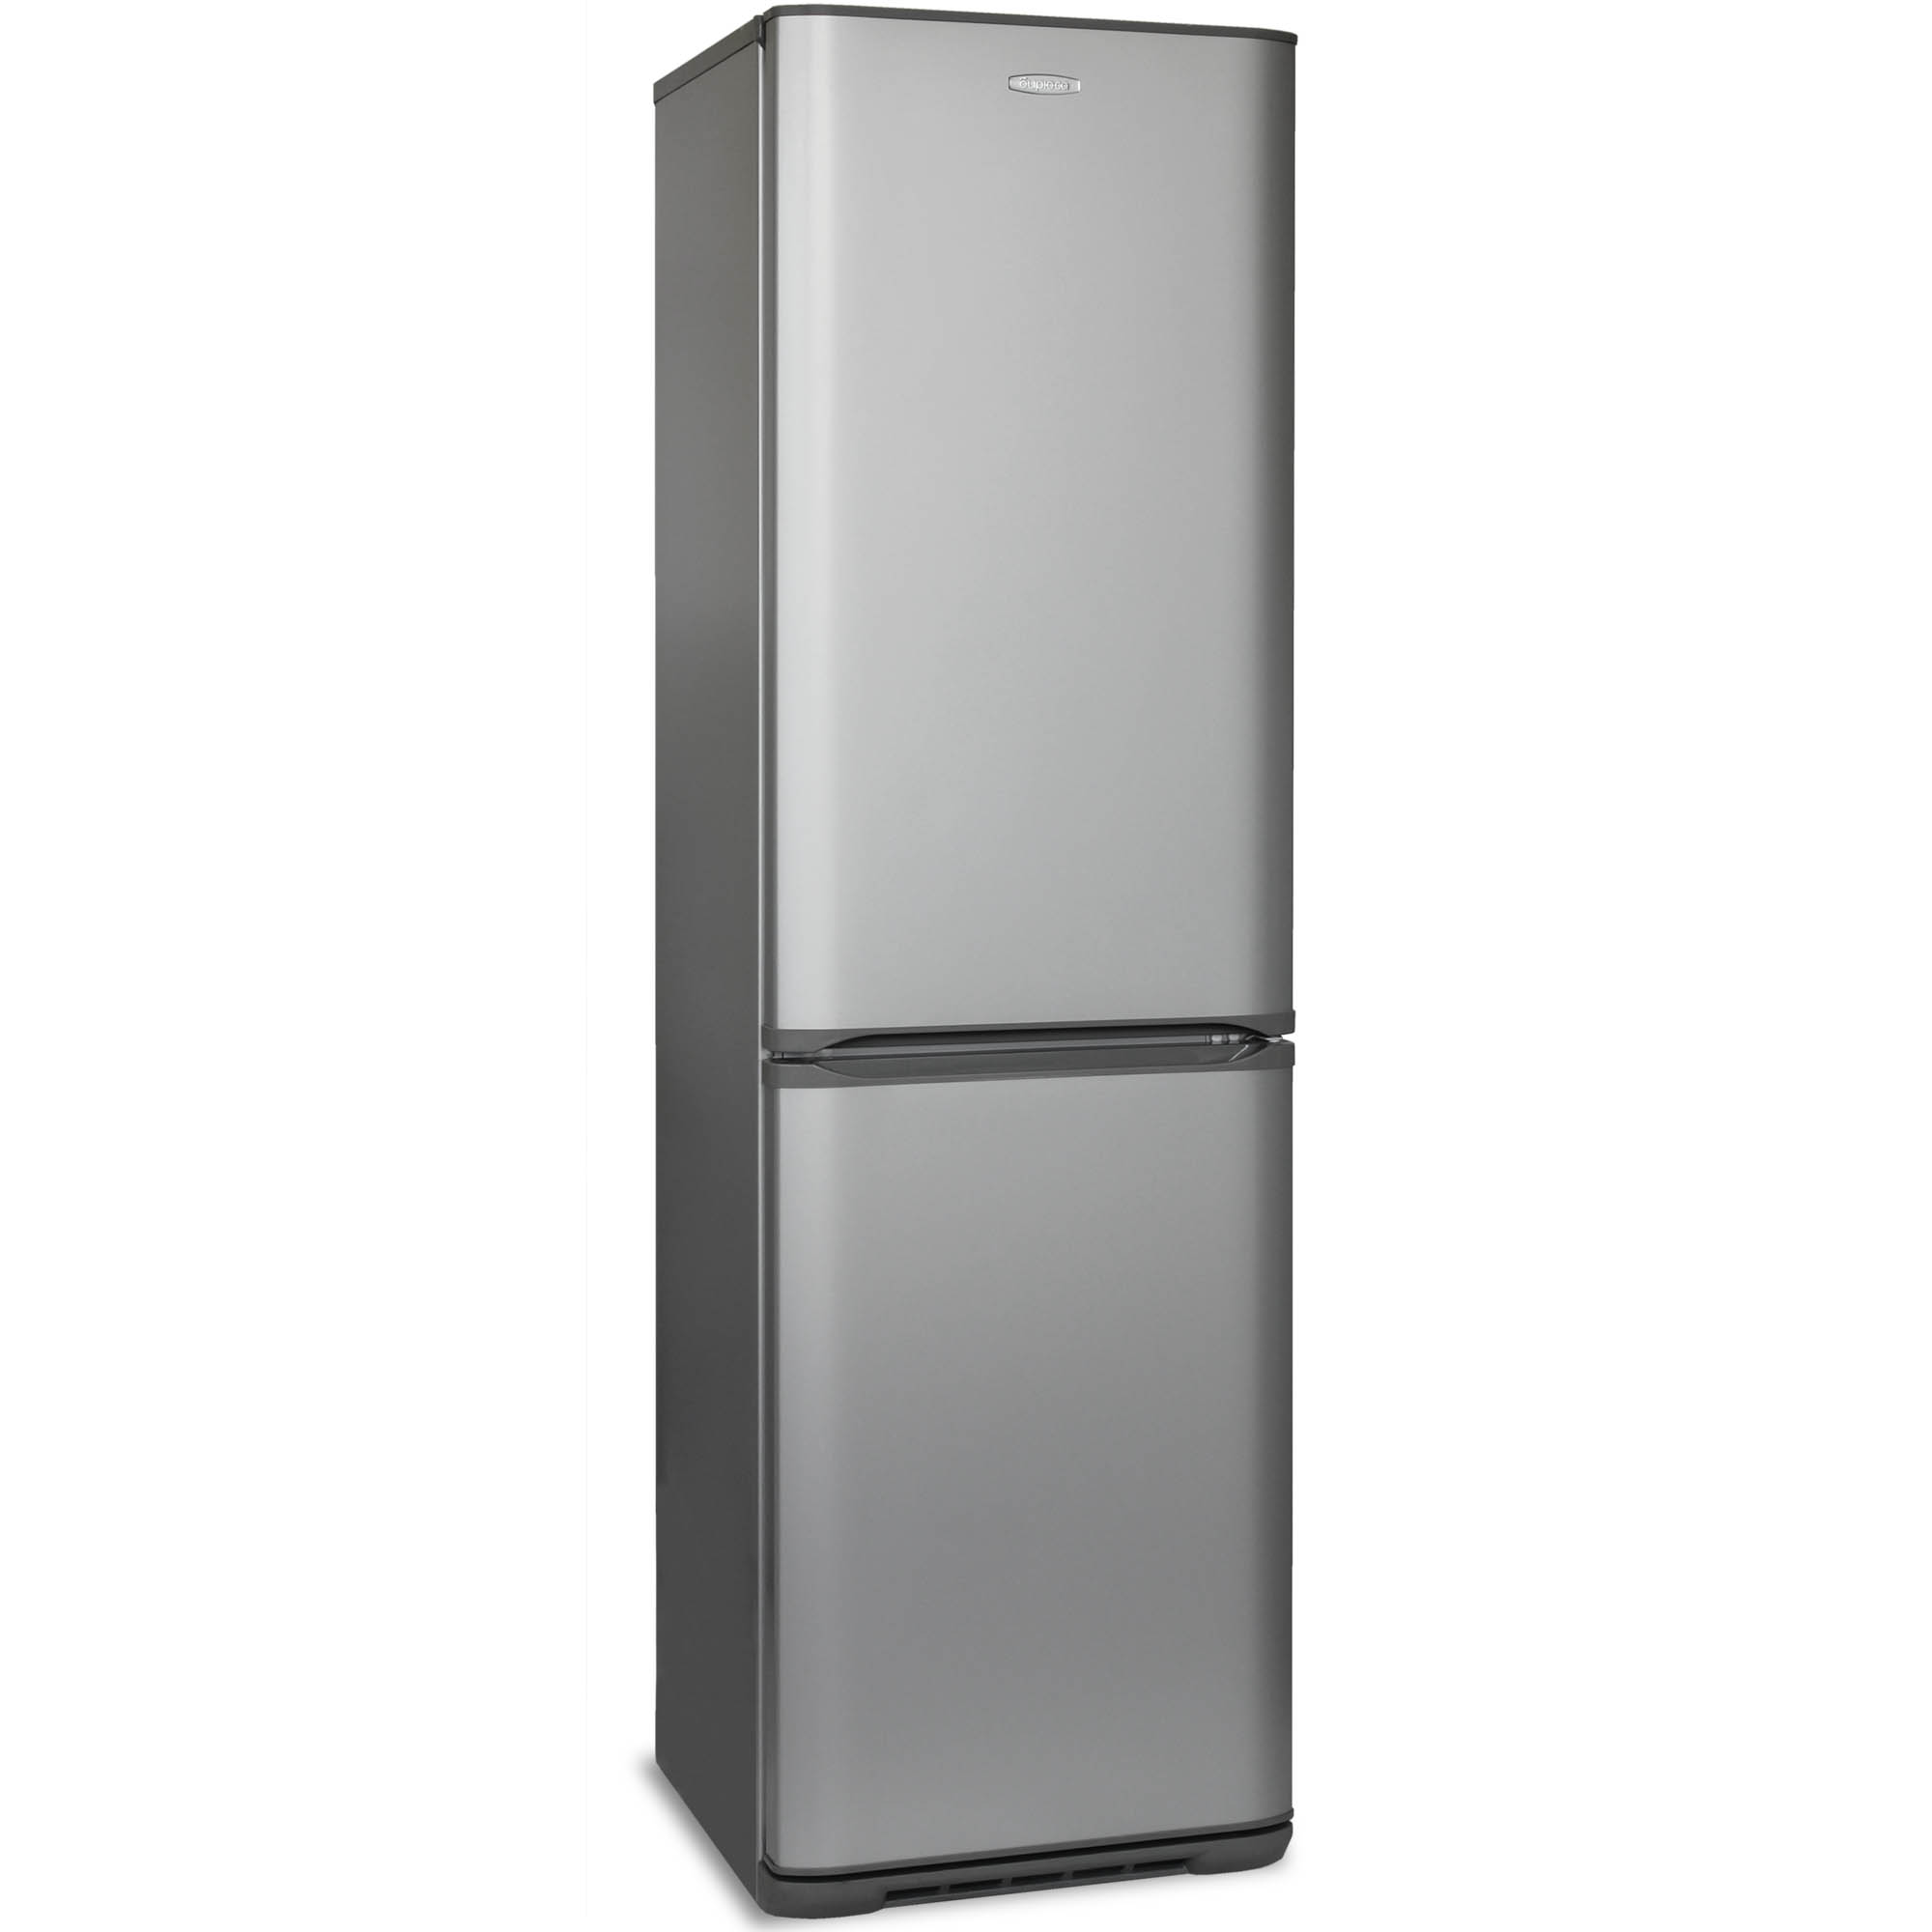 Спб купить холодильник недорого двухкамерный. Холодильник Бирюса m 380nf. Холодильник Бирюса 629s. Холодильник Бирюса 6027m. Бирюса m380nf 370л металлик.